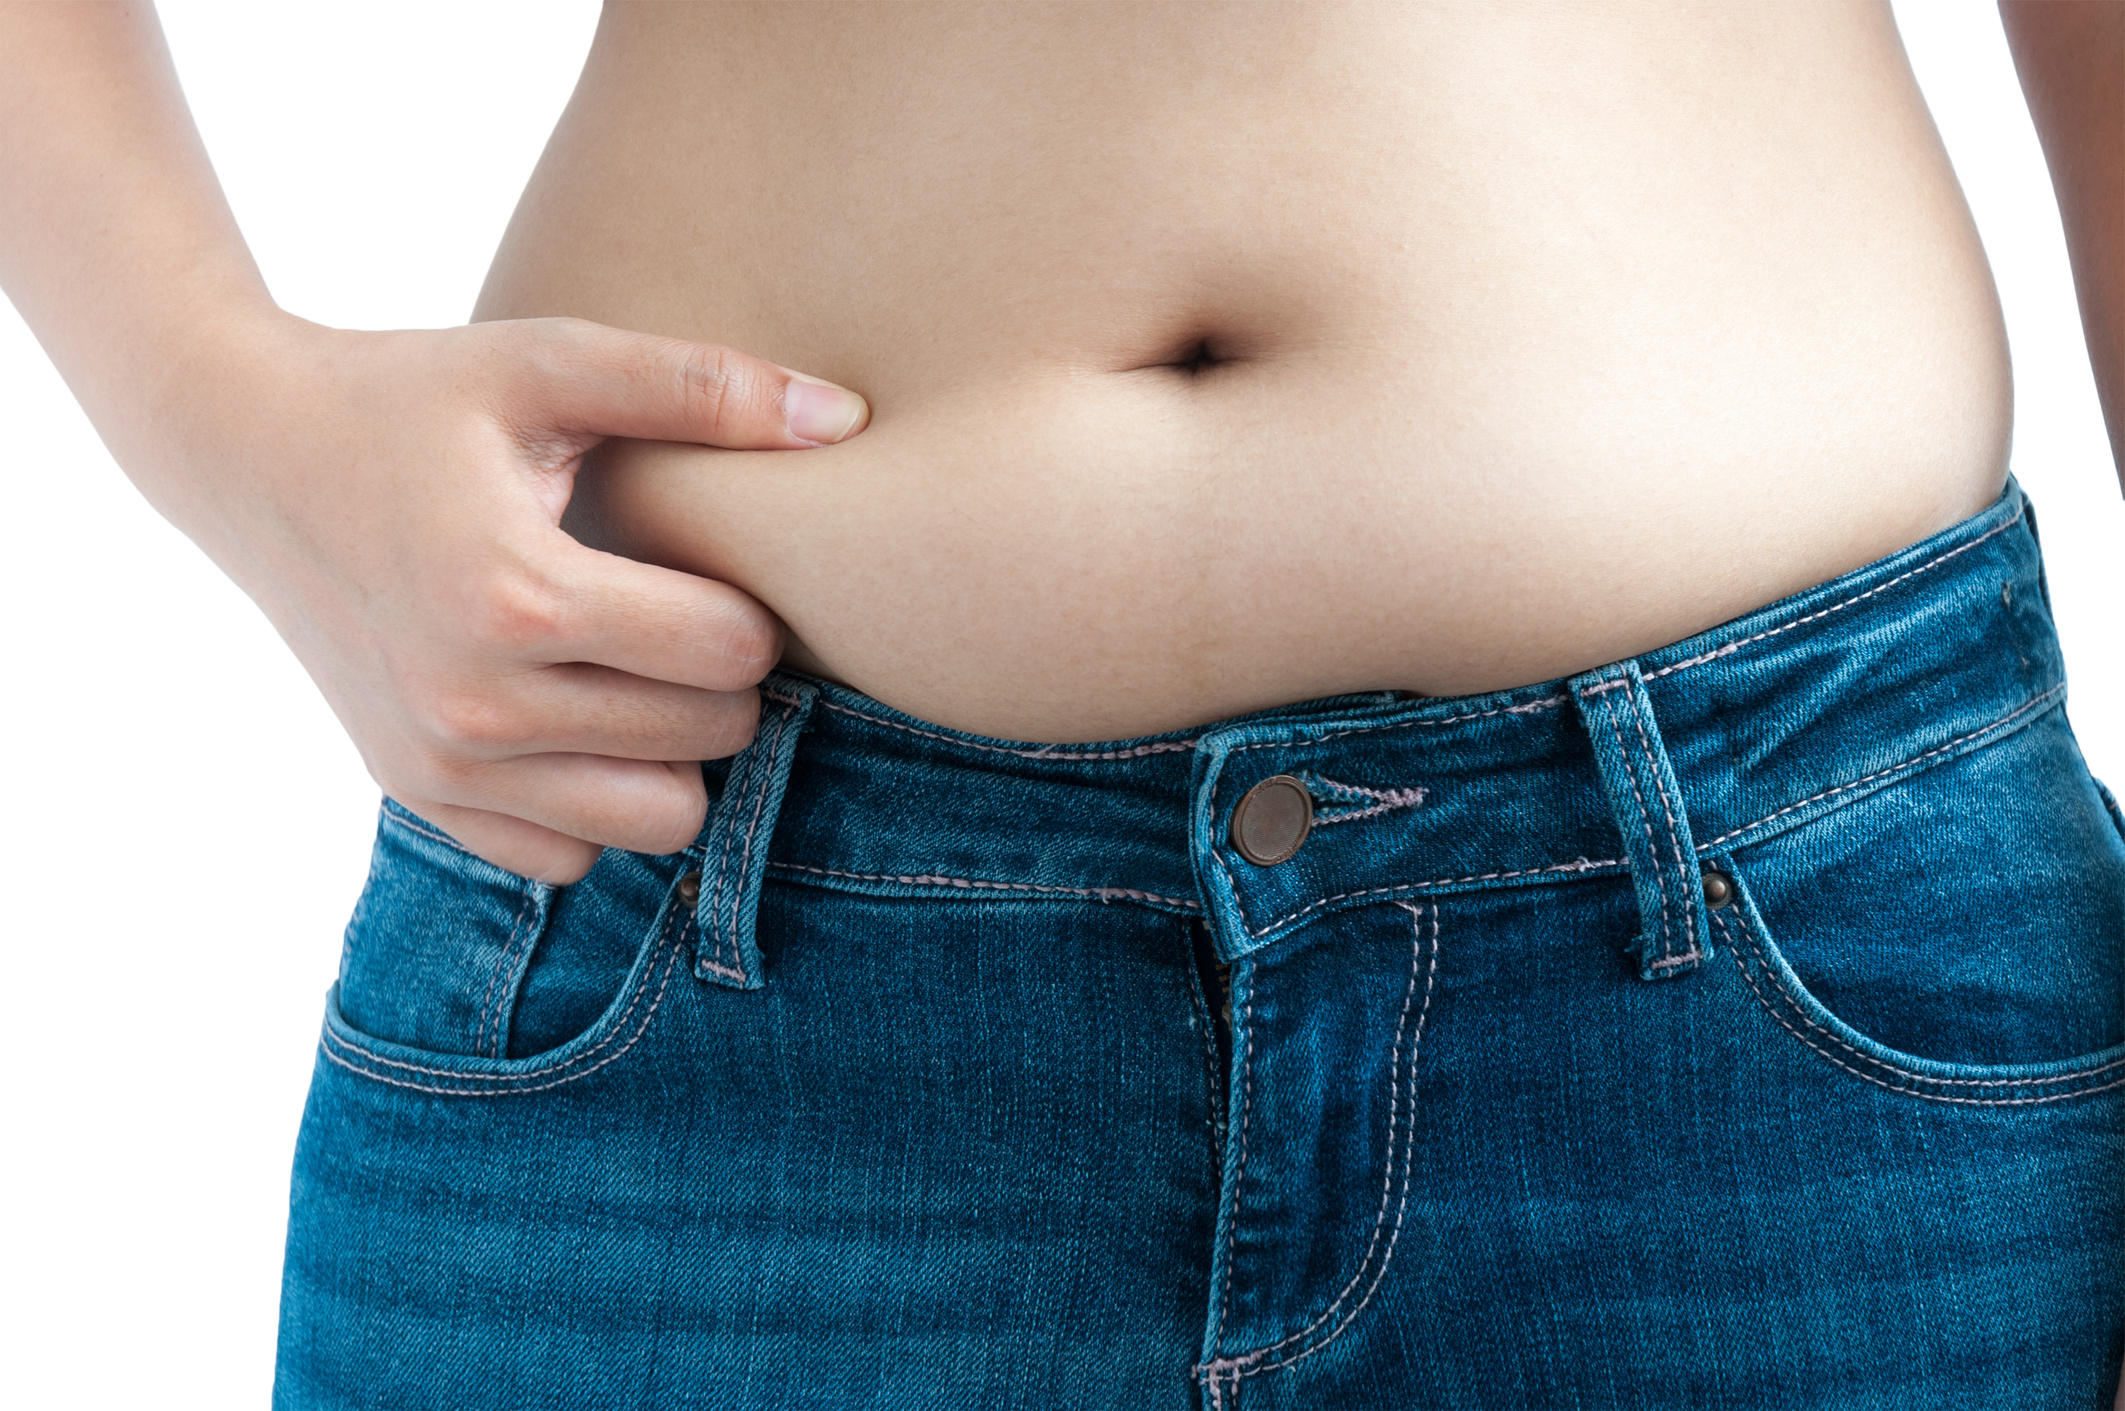 yohimbine zsírcsökkentési tanulmányok fogyni egyenlet